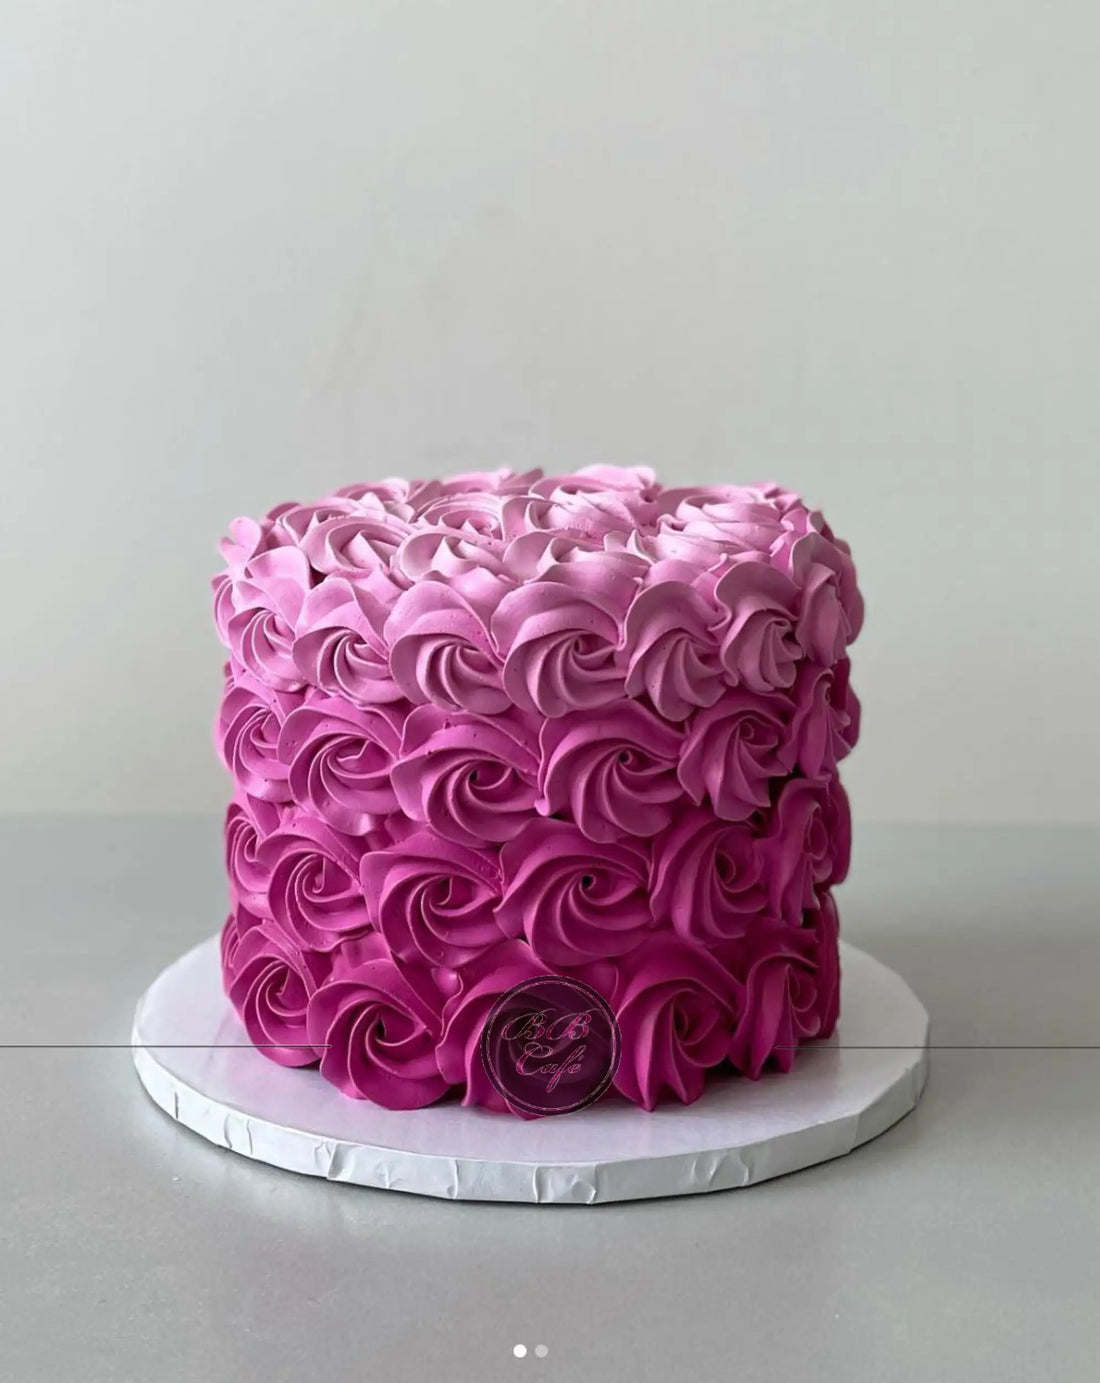 Rosettes on whipped cream - custom cake